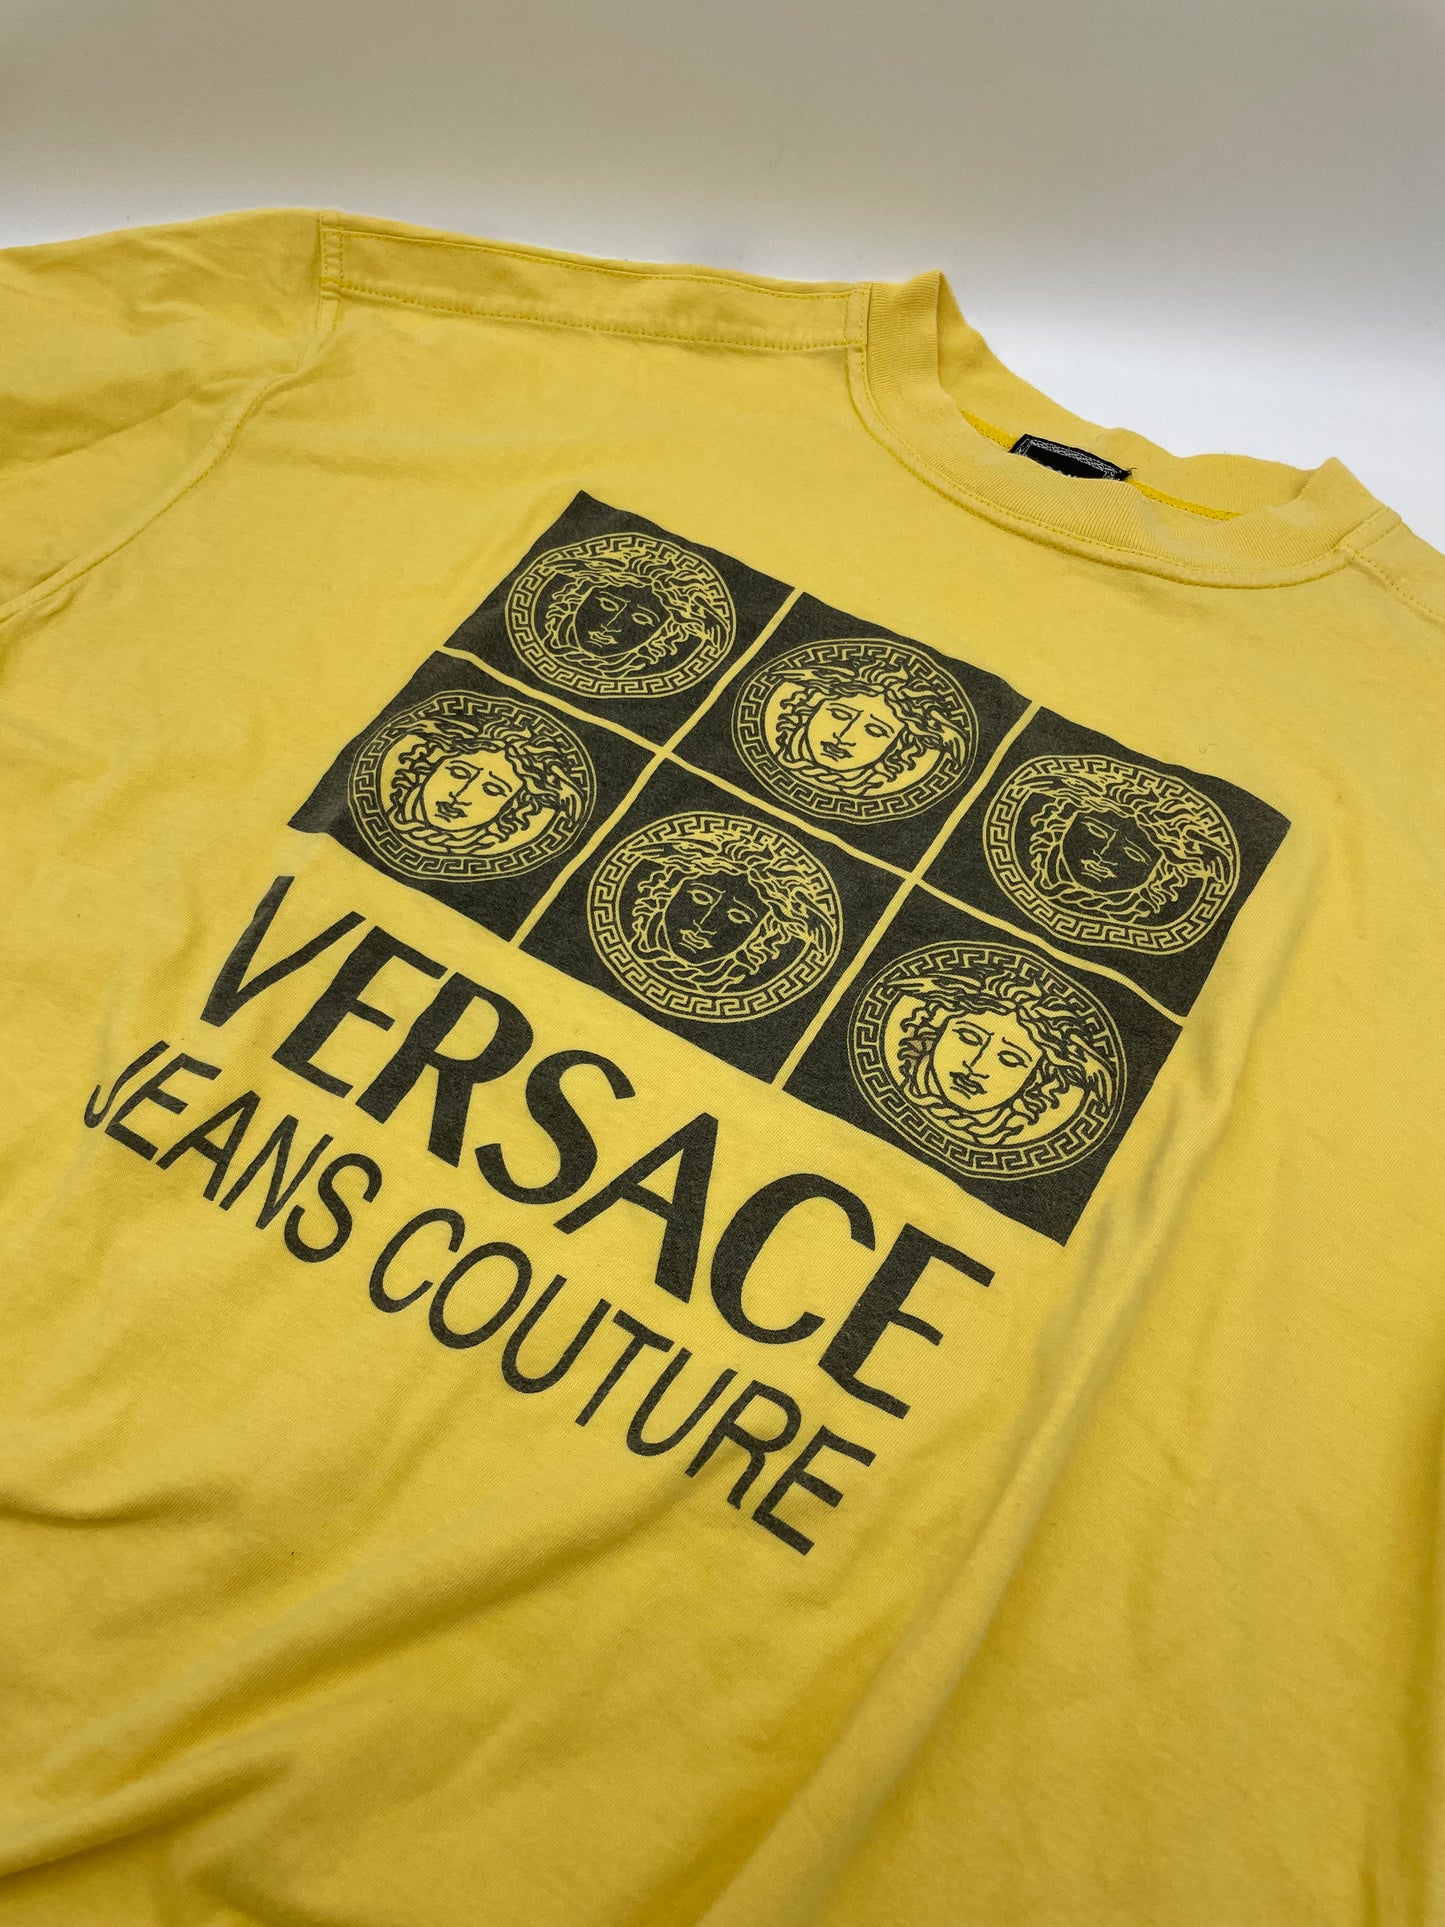 T-shirt Vintage Versace jeans Couture